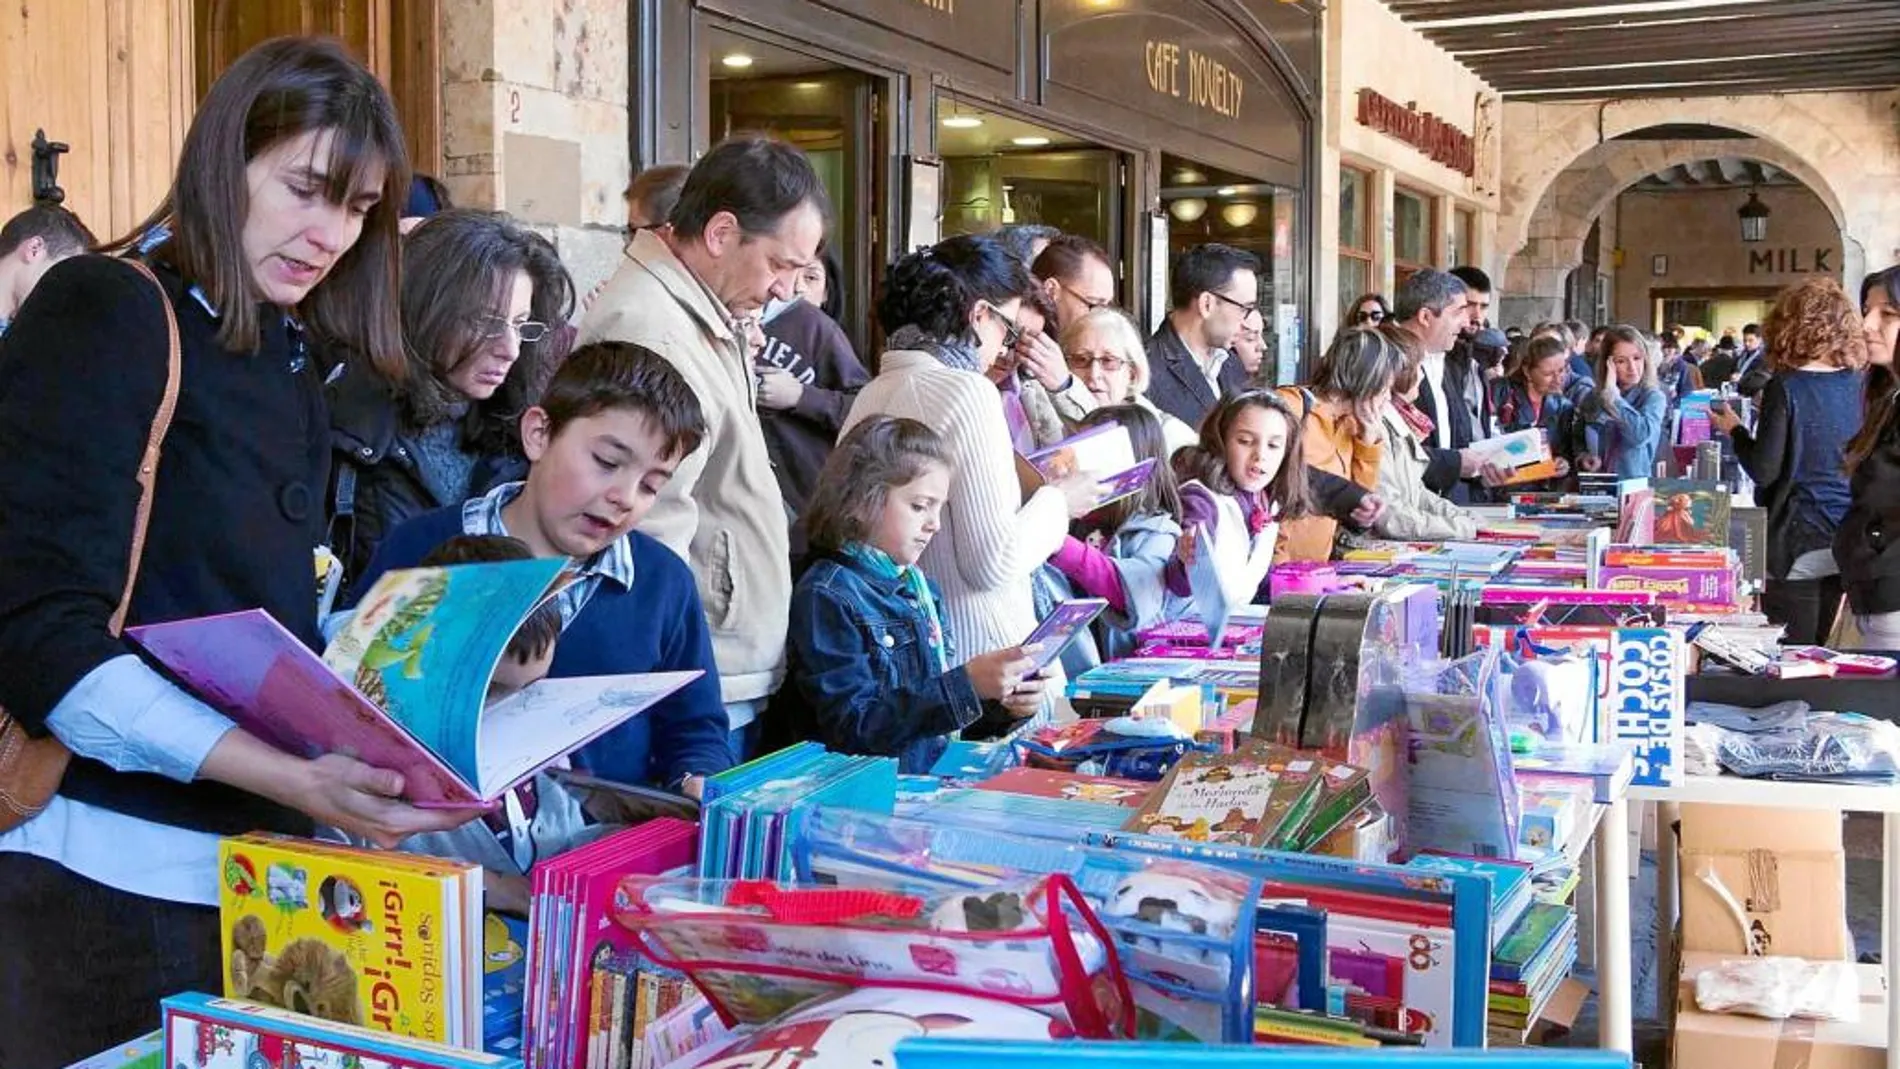 Numeroso público visitan a algunas de las librerías instaladas en los soportales de la Plaza Mayor